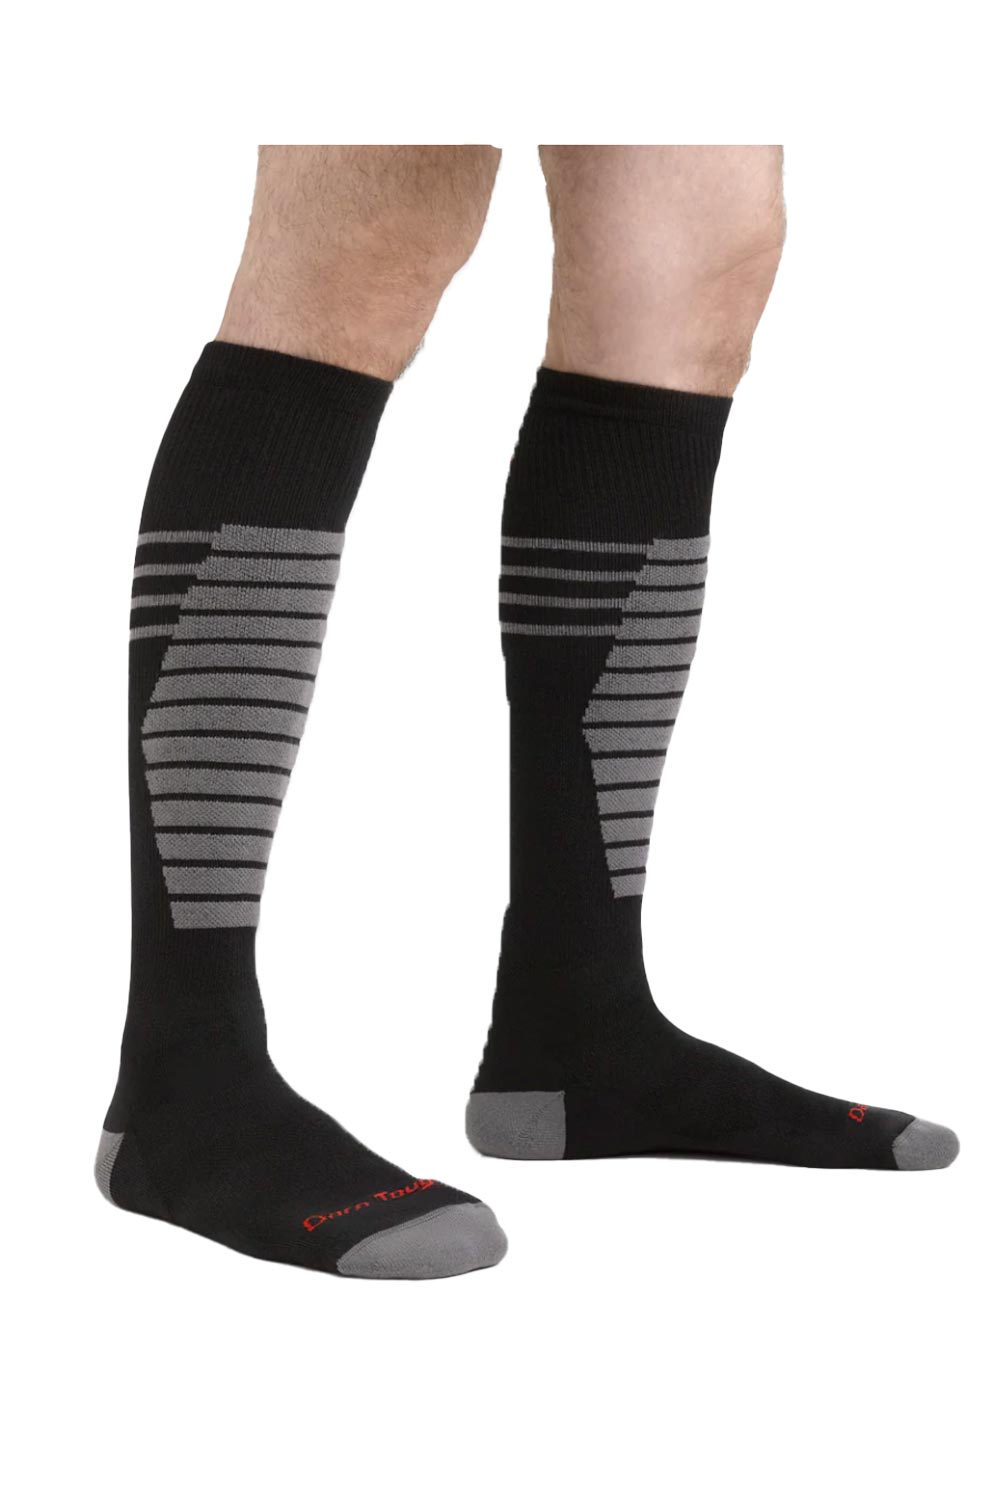 men's Darn Tough Edge ski socks, black and gray